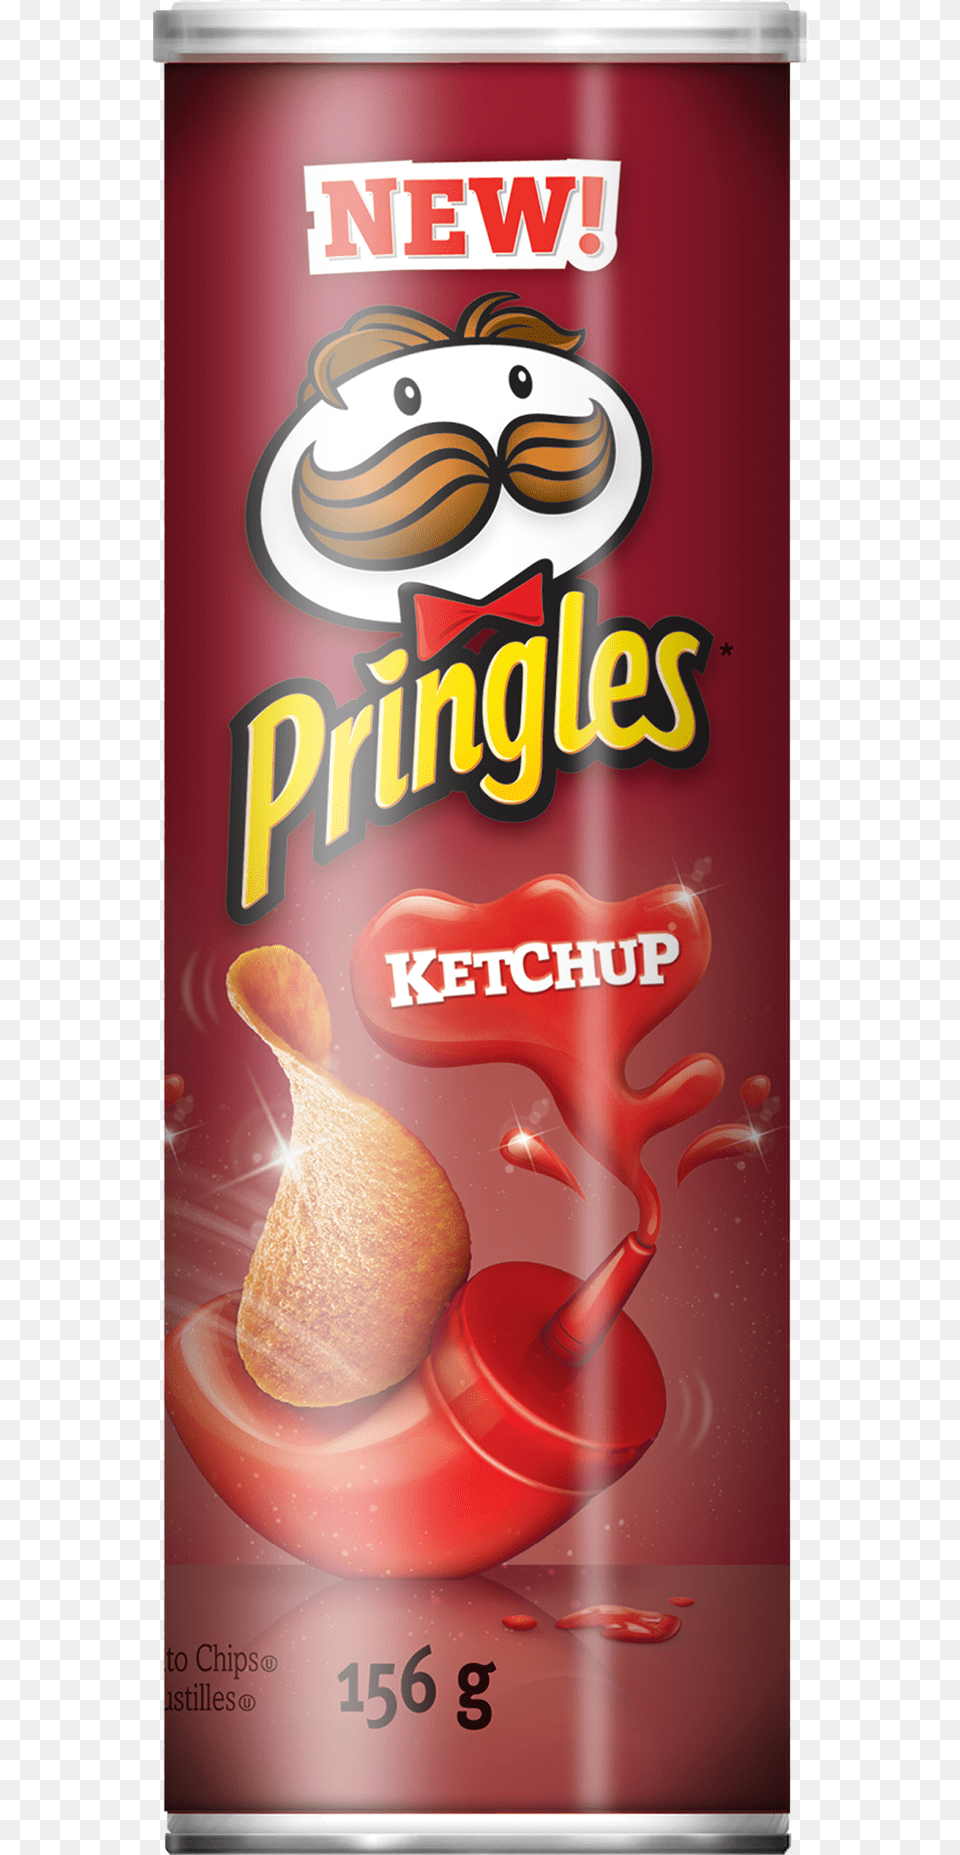 Pringles Ketchup Ketchup Pringles, Advertisement, Tin, Can Png Image